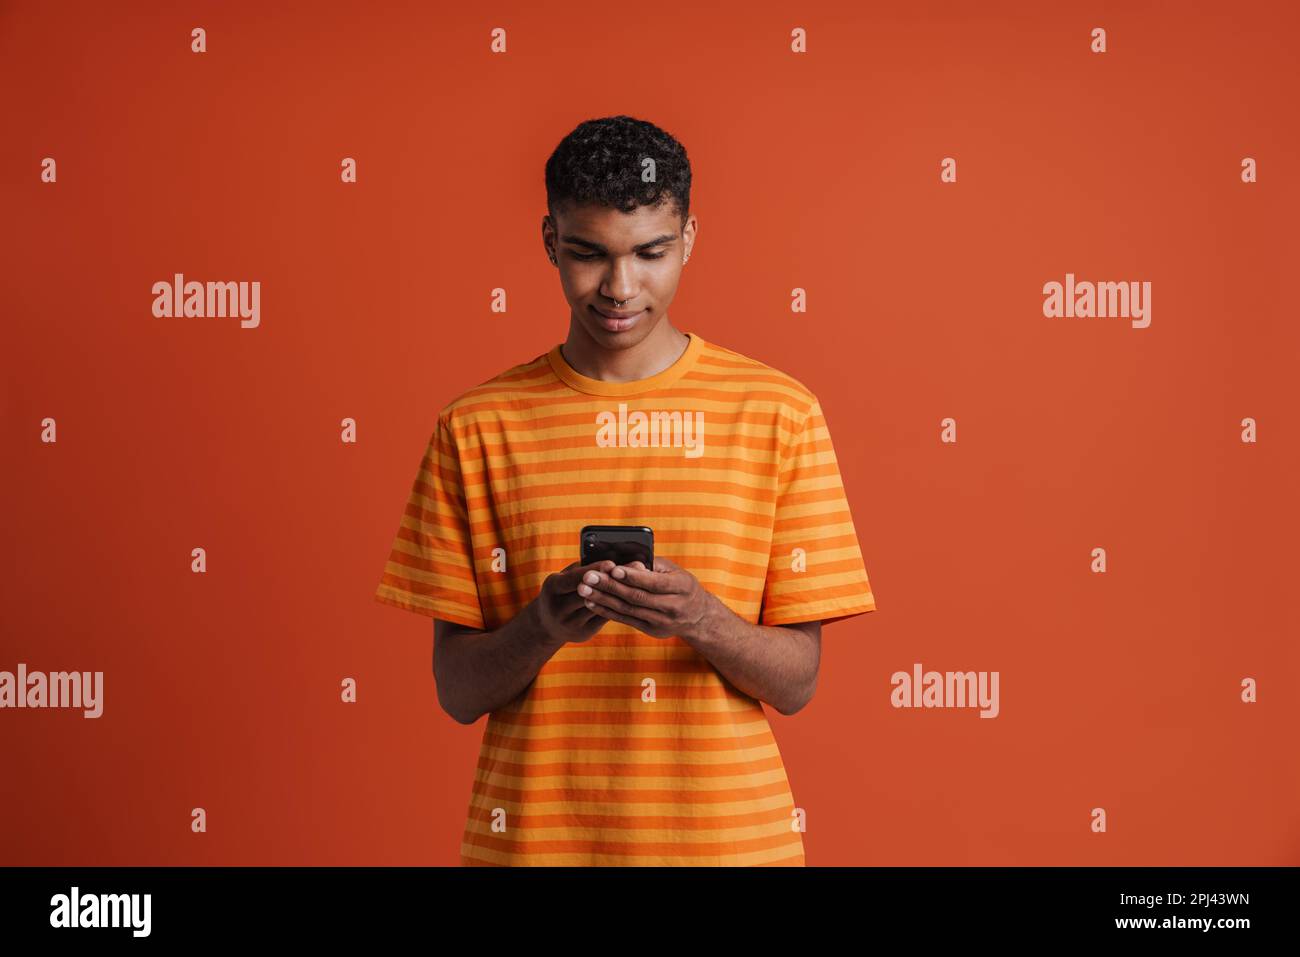 Ein junger, gut aussehender, ruhiger afrikaner mit Piercings, der sein Handy hält und darauf schaut, während er über einem isolierten orangefarbenen Hintergrund steht Stockfoto